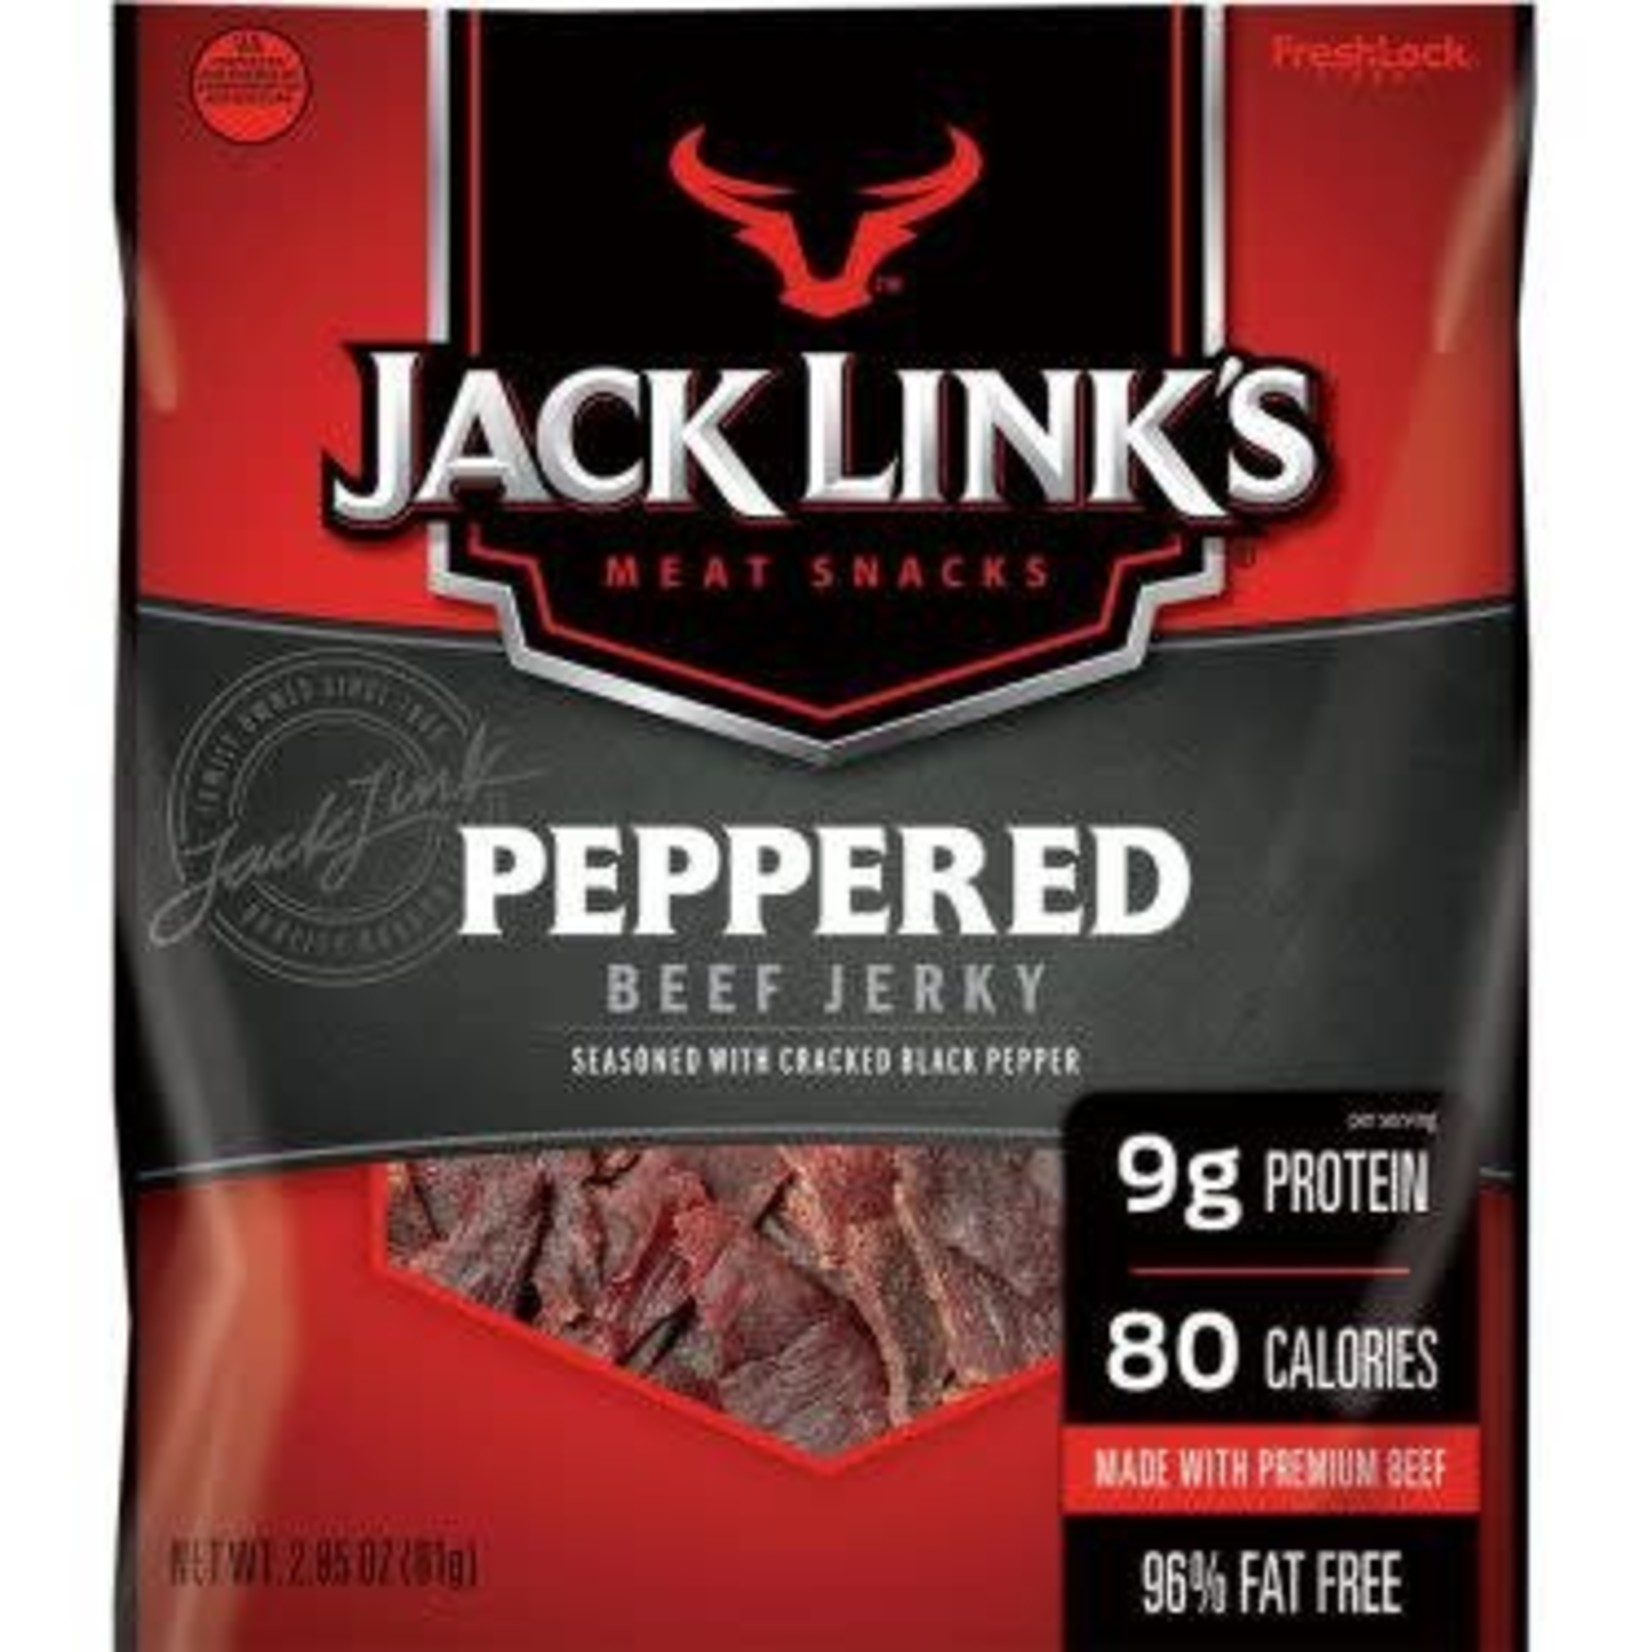 Jack Link's Meat Snacks Jack Link's Peppered Beef Jerky